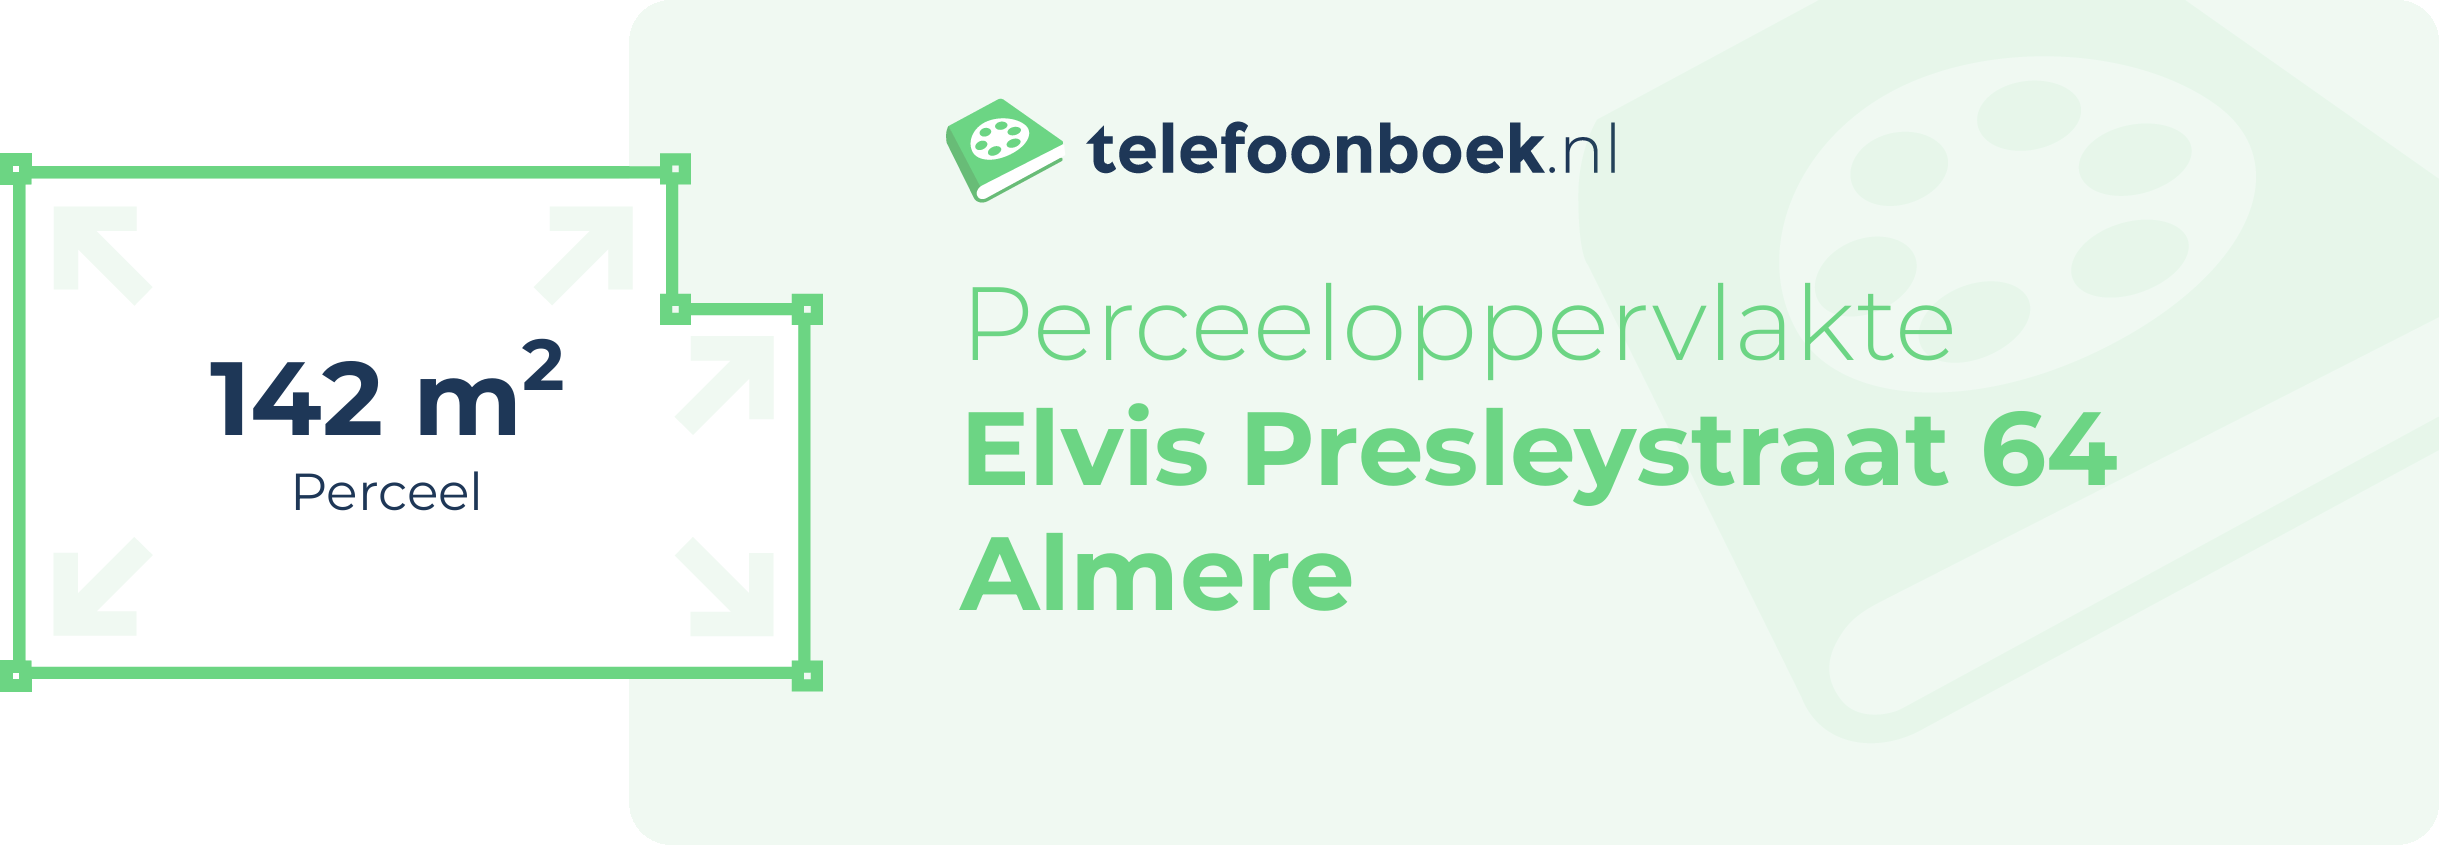 Perceeloppervlakte Elvis Presleystraat 64 Almere